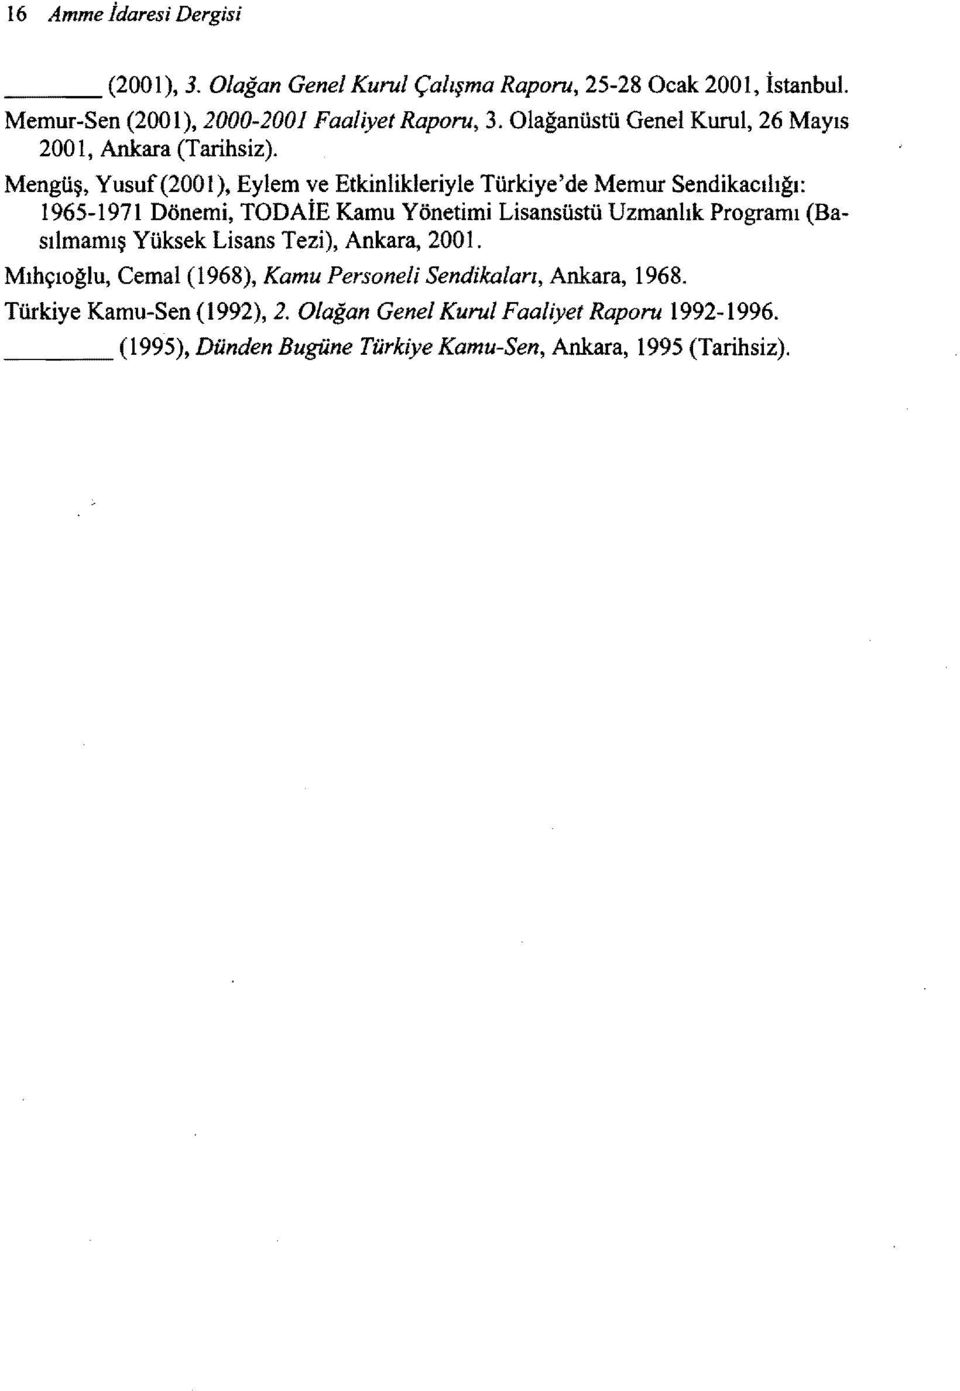 Mengüş, Yusuf(2001), Eylem ve Etkinlikleriyle Türkiye'de Memur dikacılığı: 1965-1 971 Dönemi, TODAİE Kamu Yönetimi Lisansüstü Uzmanlık Programı